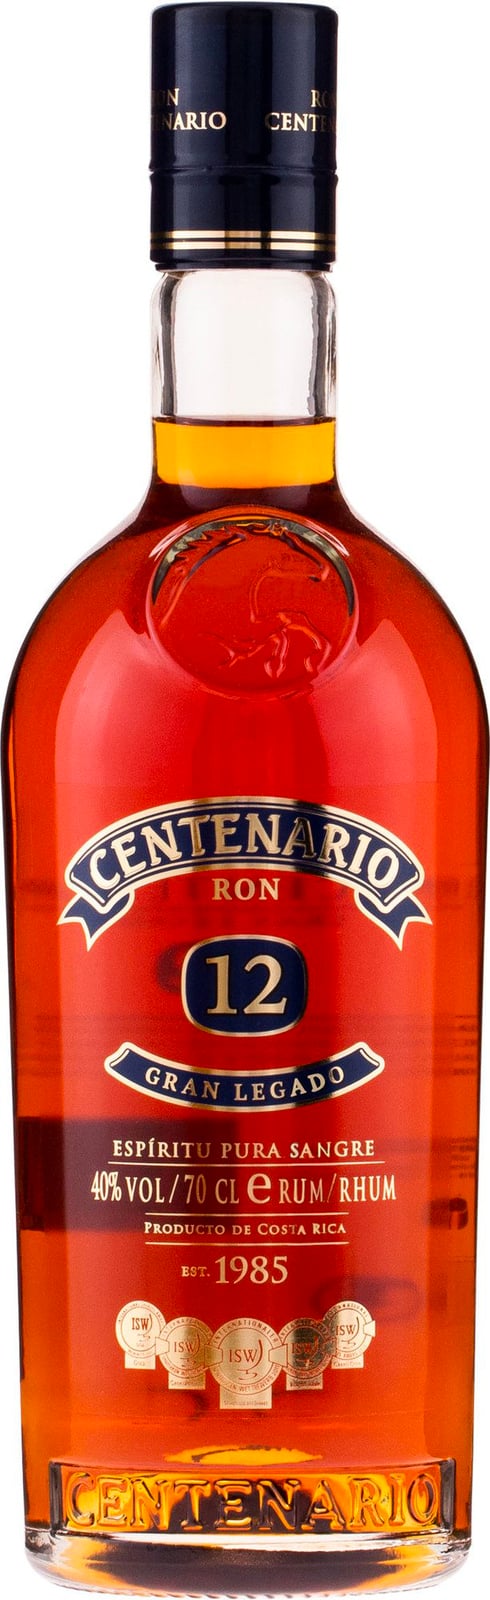 Rum Ron year 12 Gran Legado Centenario